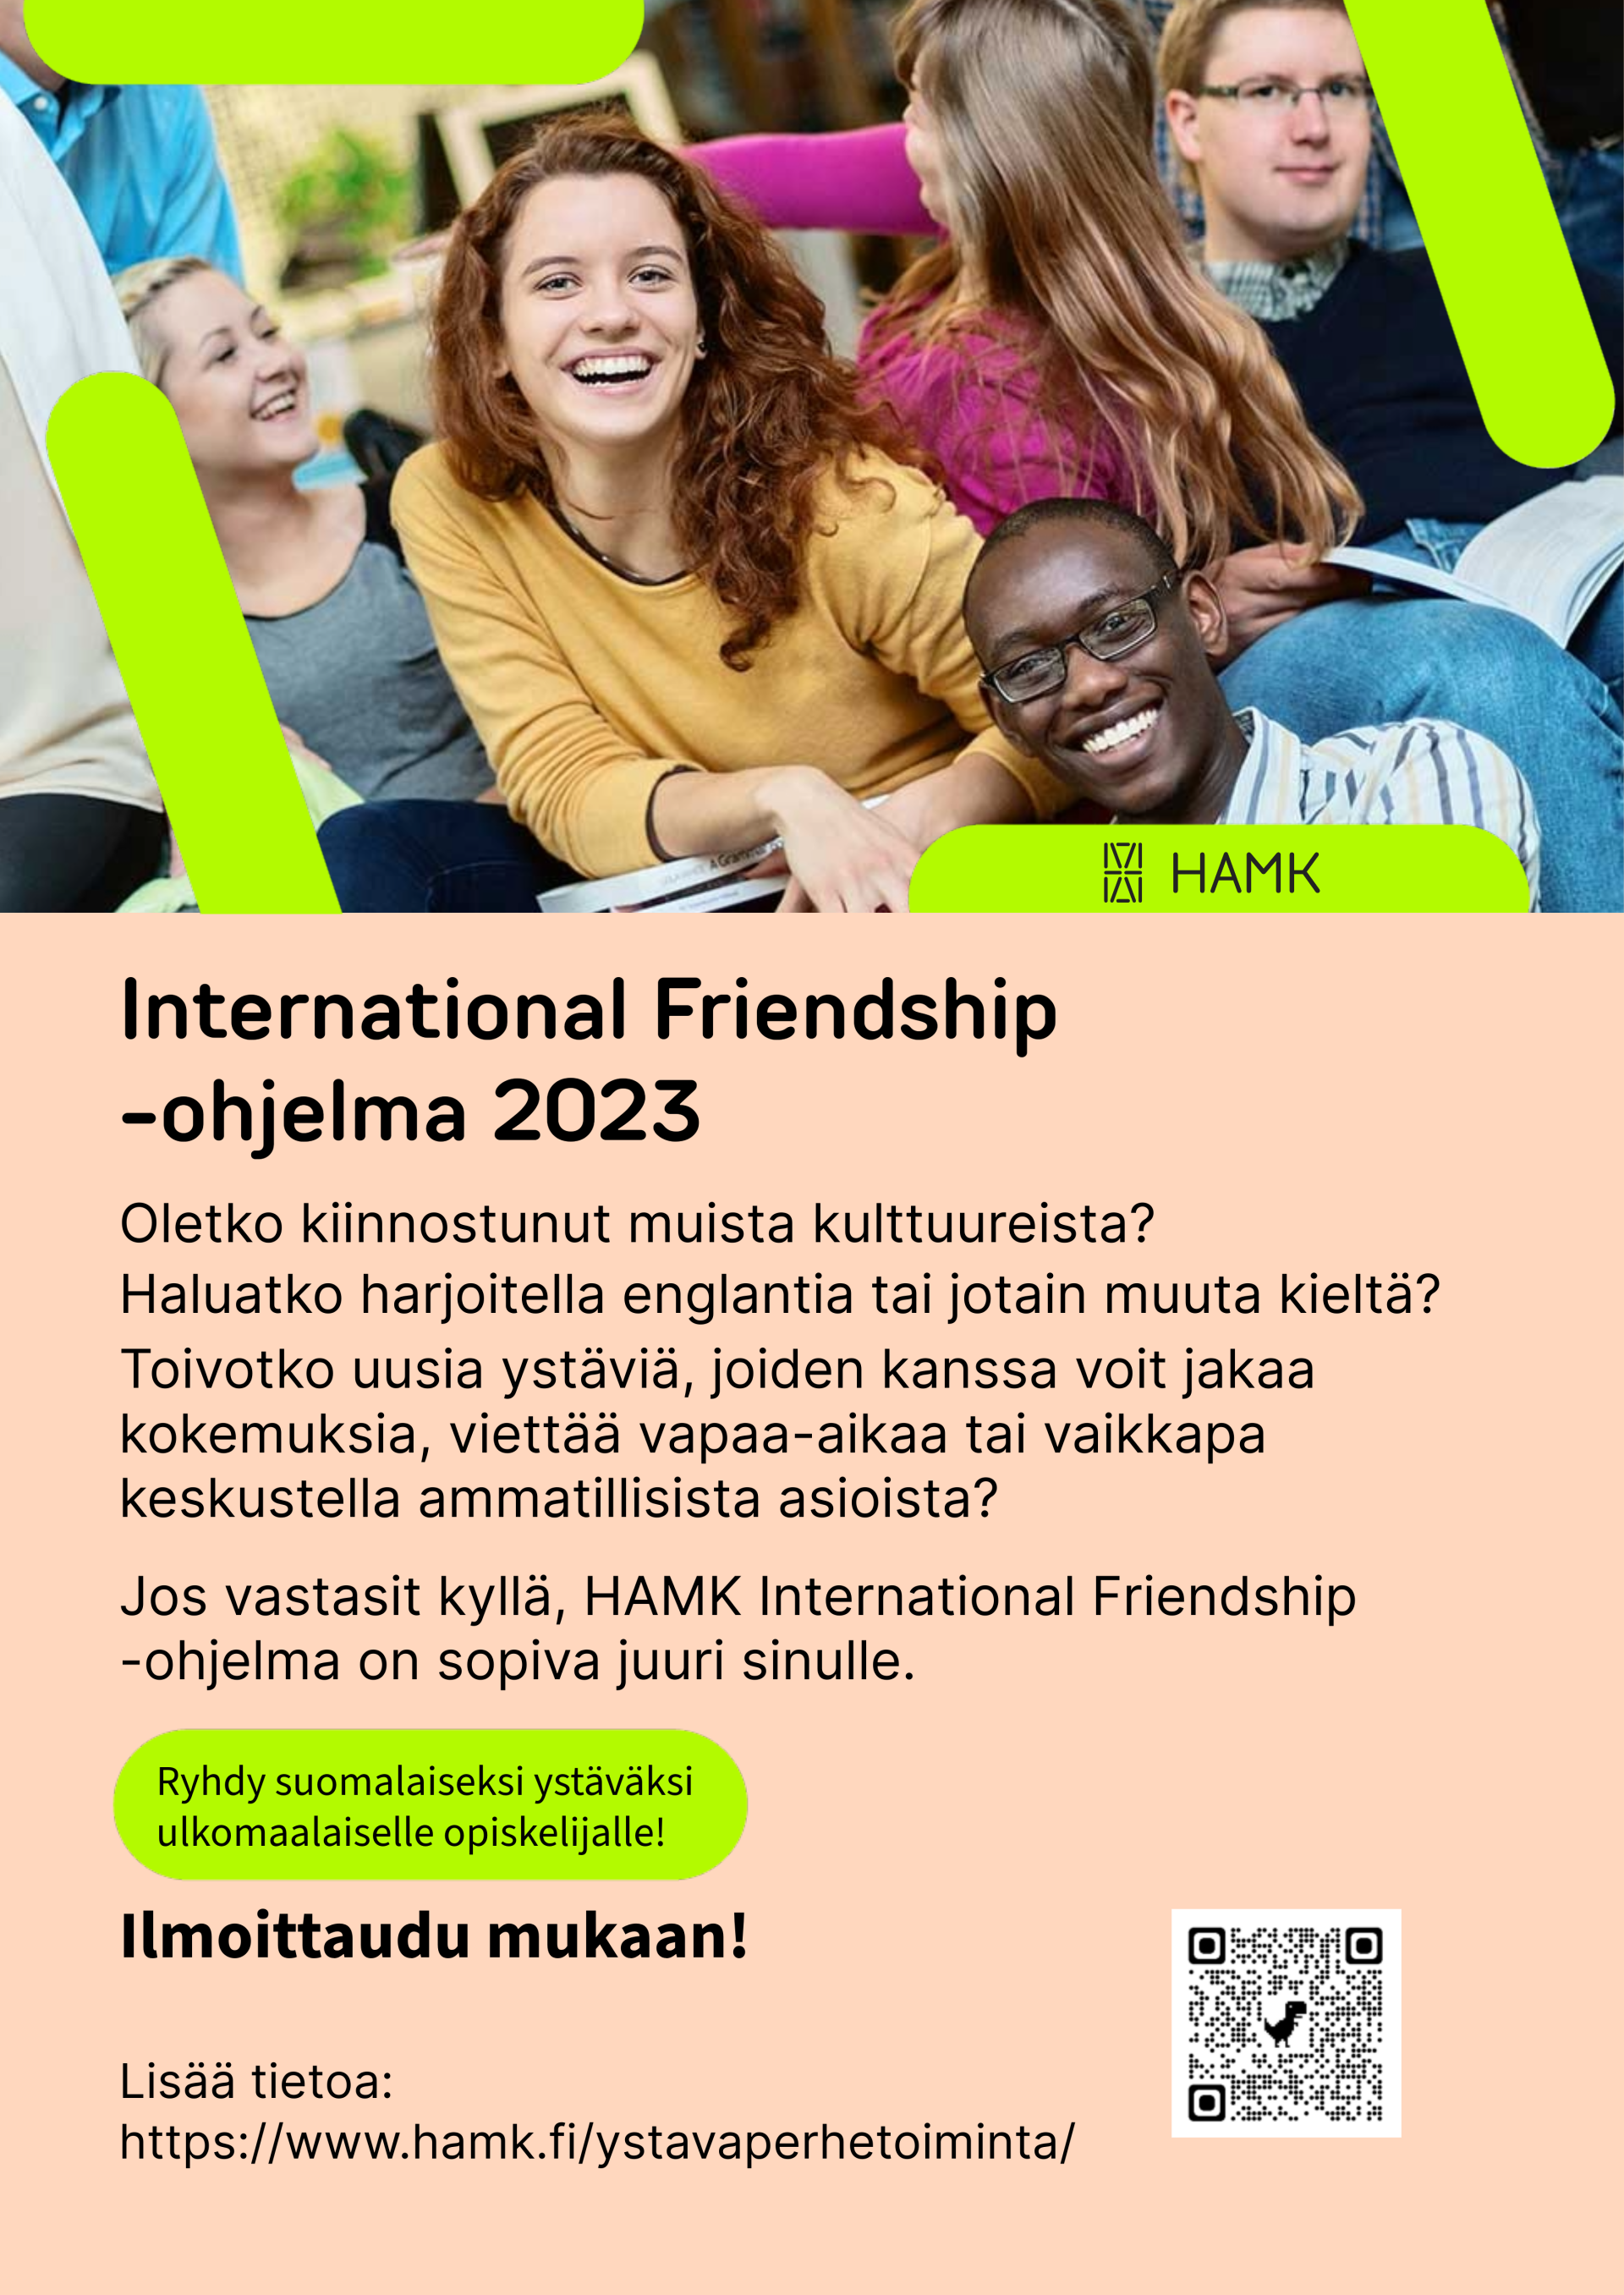 HAMKin juliste, jossa kuvassa opiskelijoita. Tekstiosassa kerrotaan International Friendship -ohjelmasta.